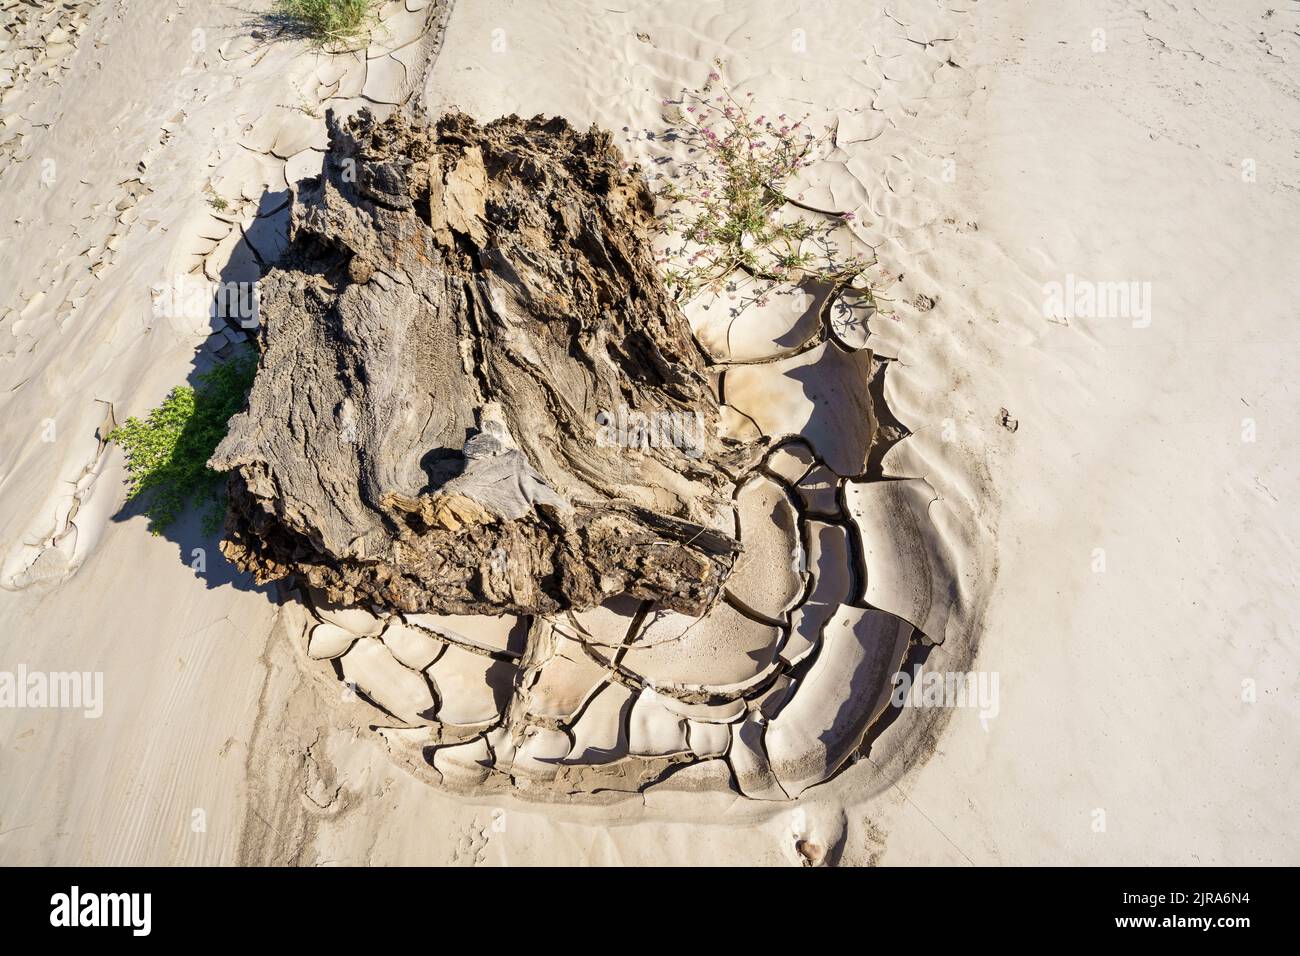 Immagine simbolica, speranza, ambiente, cambiamento climatico, pezzo morto di legno all'interno di modelli di letto di fiume secco. Fiume Swakop, Namibia, Africa Foto Stock